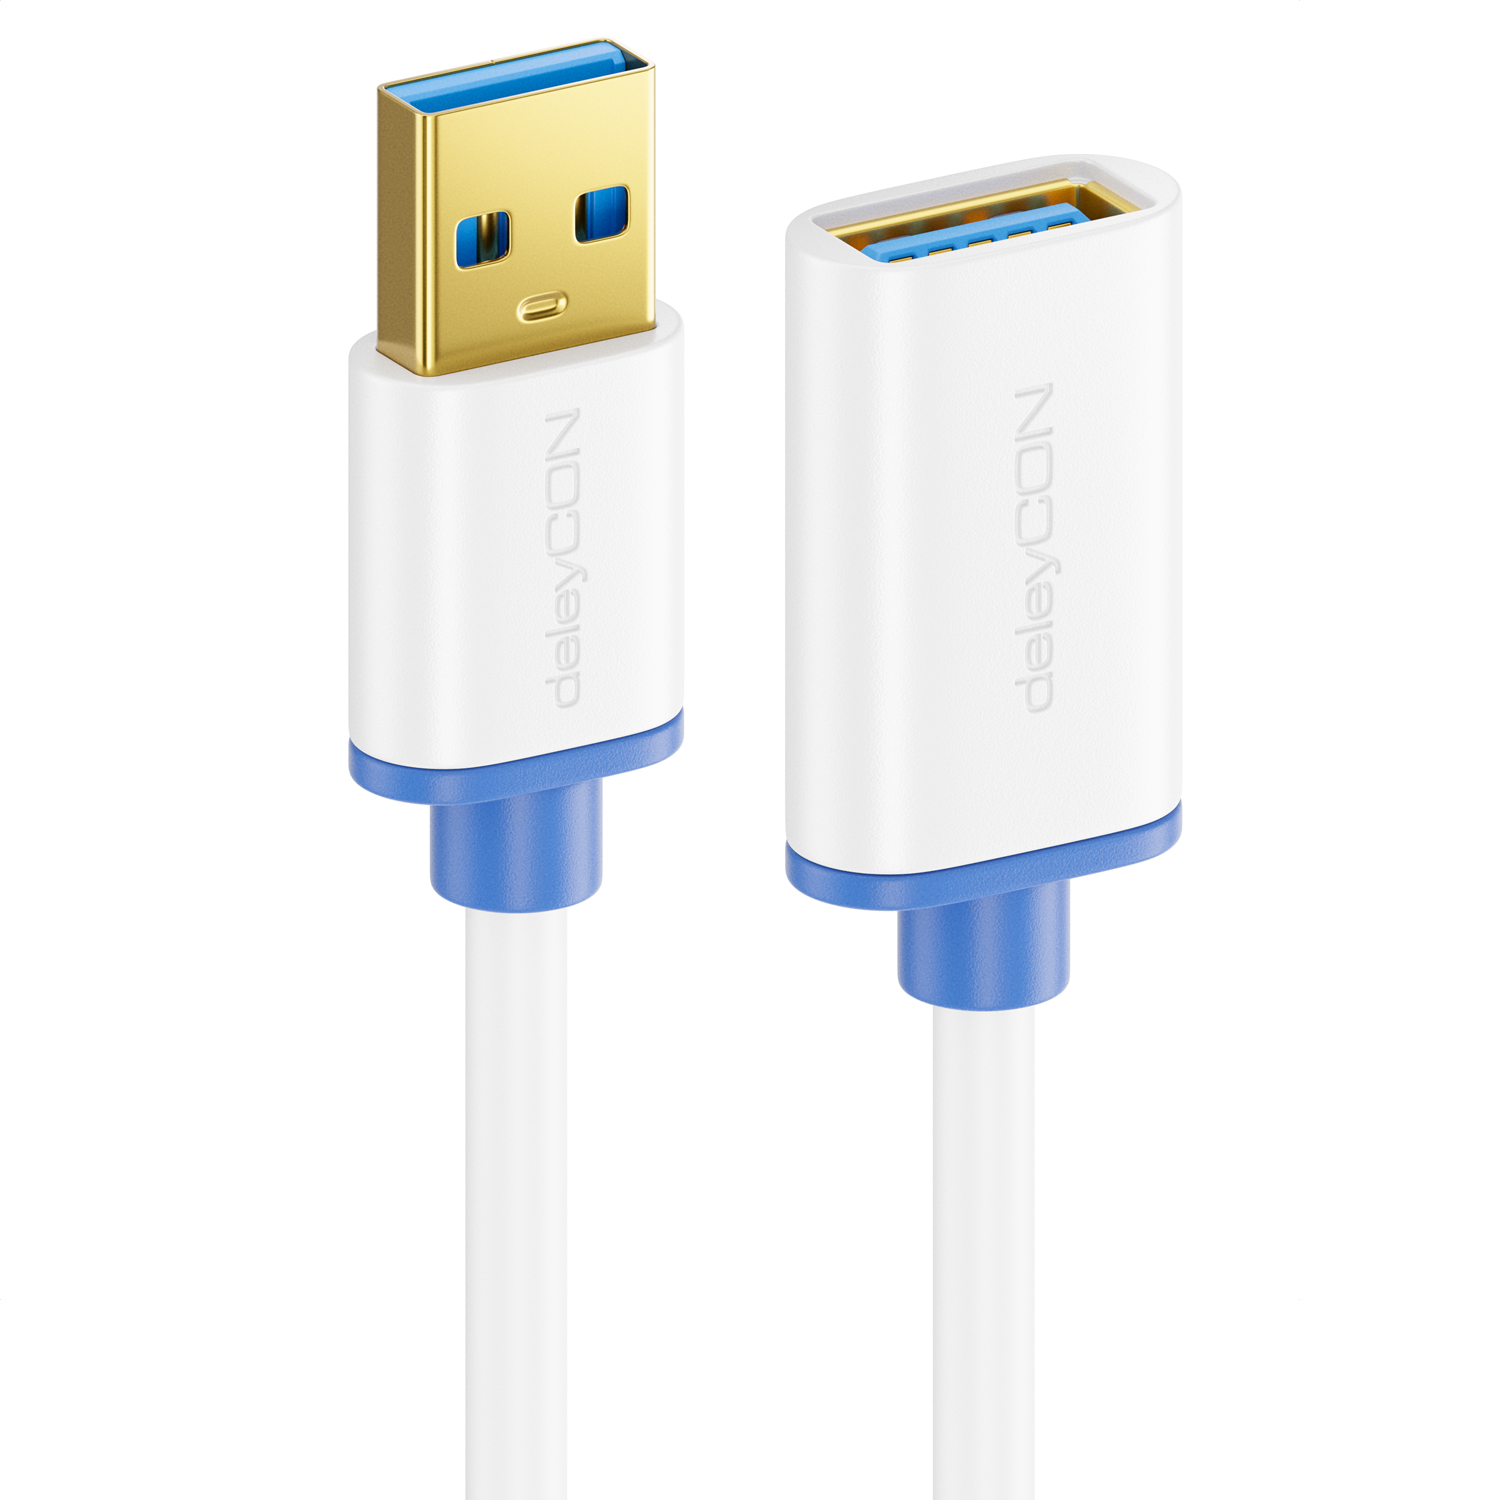 deleyCON USB 3.0 Super Speed Verlängerungskabel - USB A-Stecker zu USB A- Buchse - USB 3.0 Super Speed Technologie bis zu 5 Gbit/s - Weiß/Blau -  deleyCON